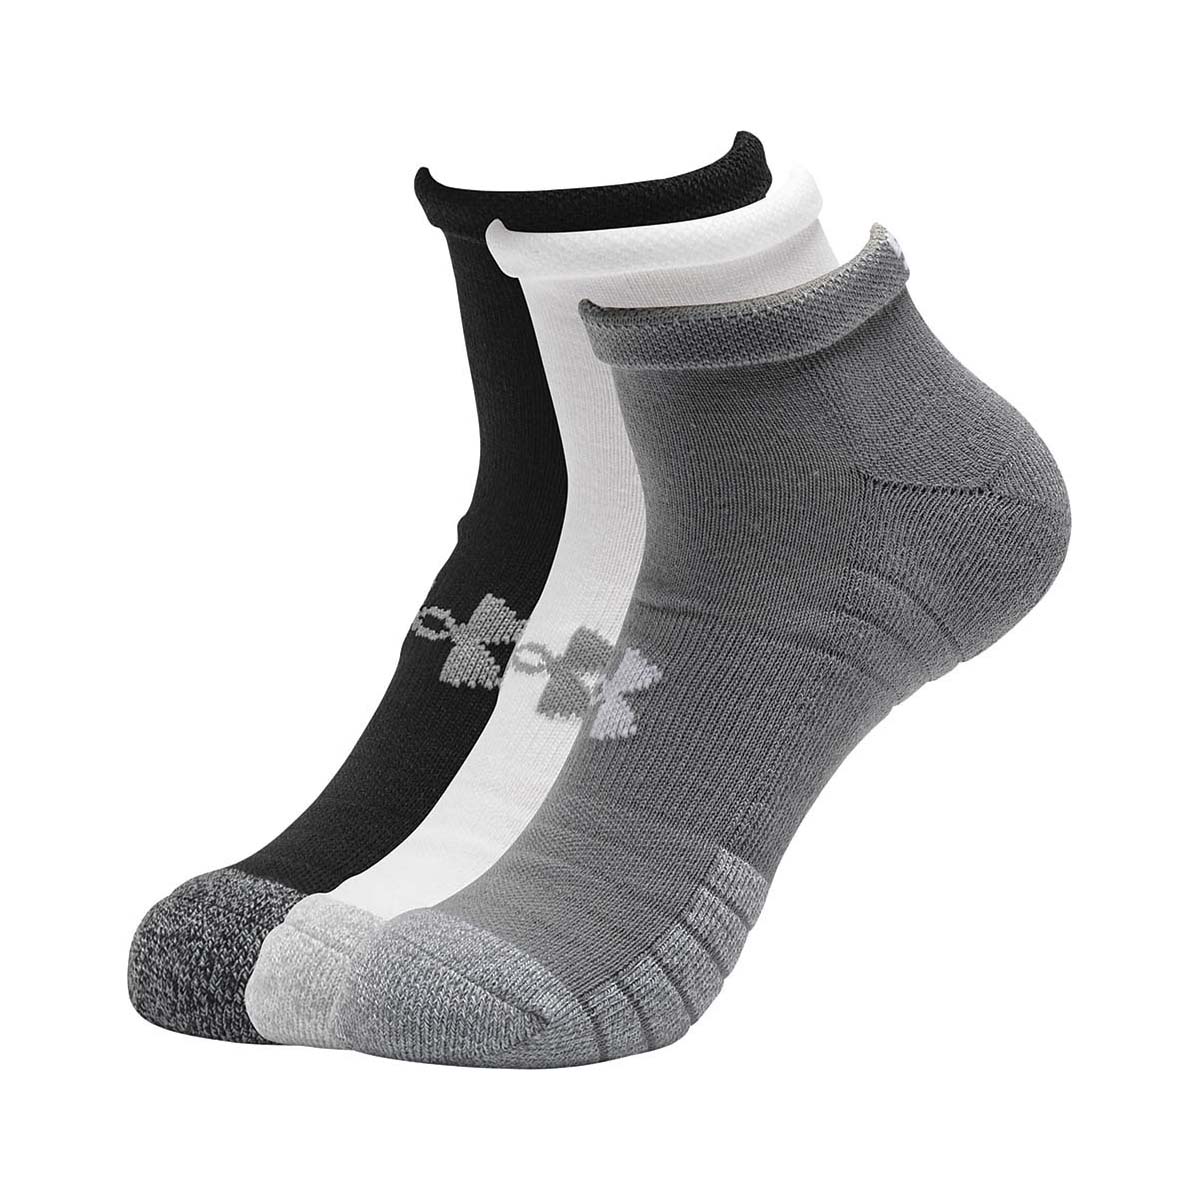 Under Armour Men's HeatGear Lo Cut Socks 3 Pack Steel / White XL